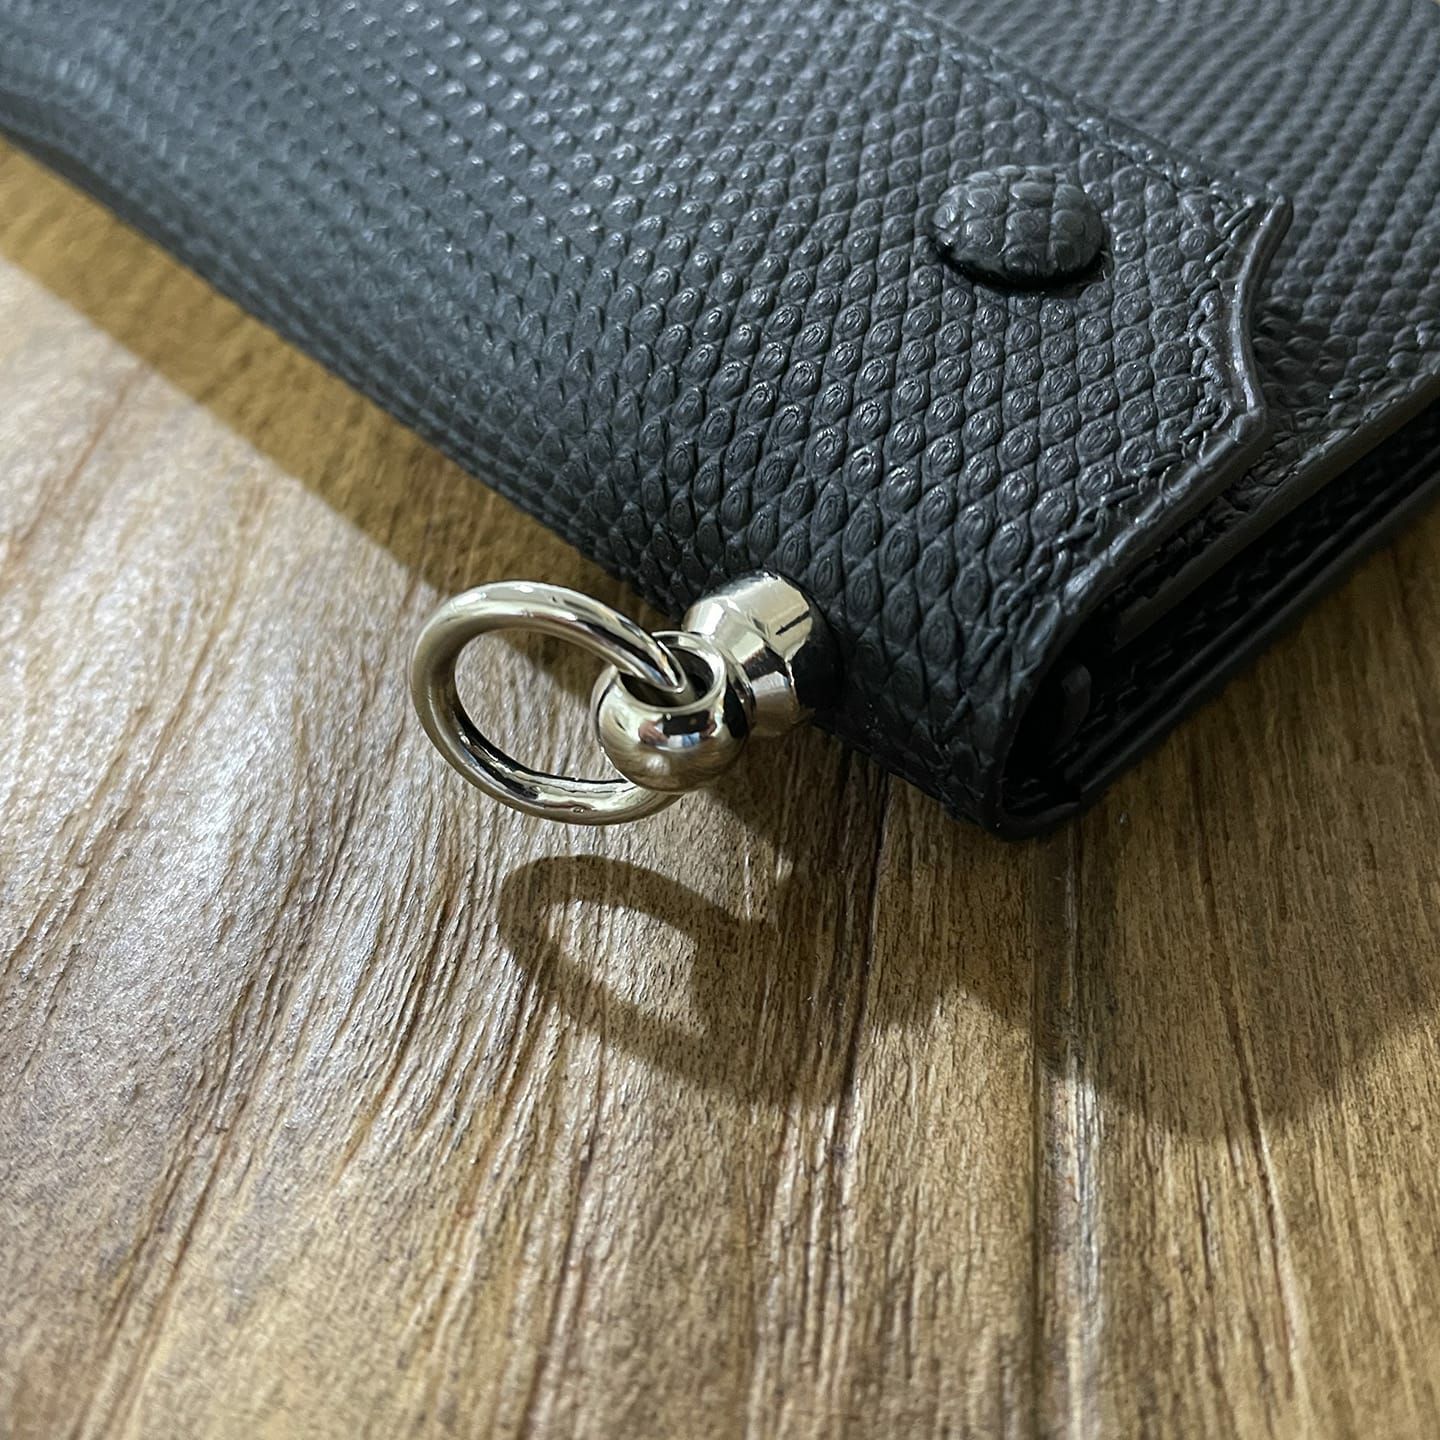 ロングウォレット | 大人のバッグ・財布・ 長財布 など拘りの日本製